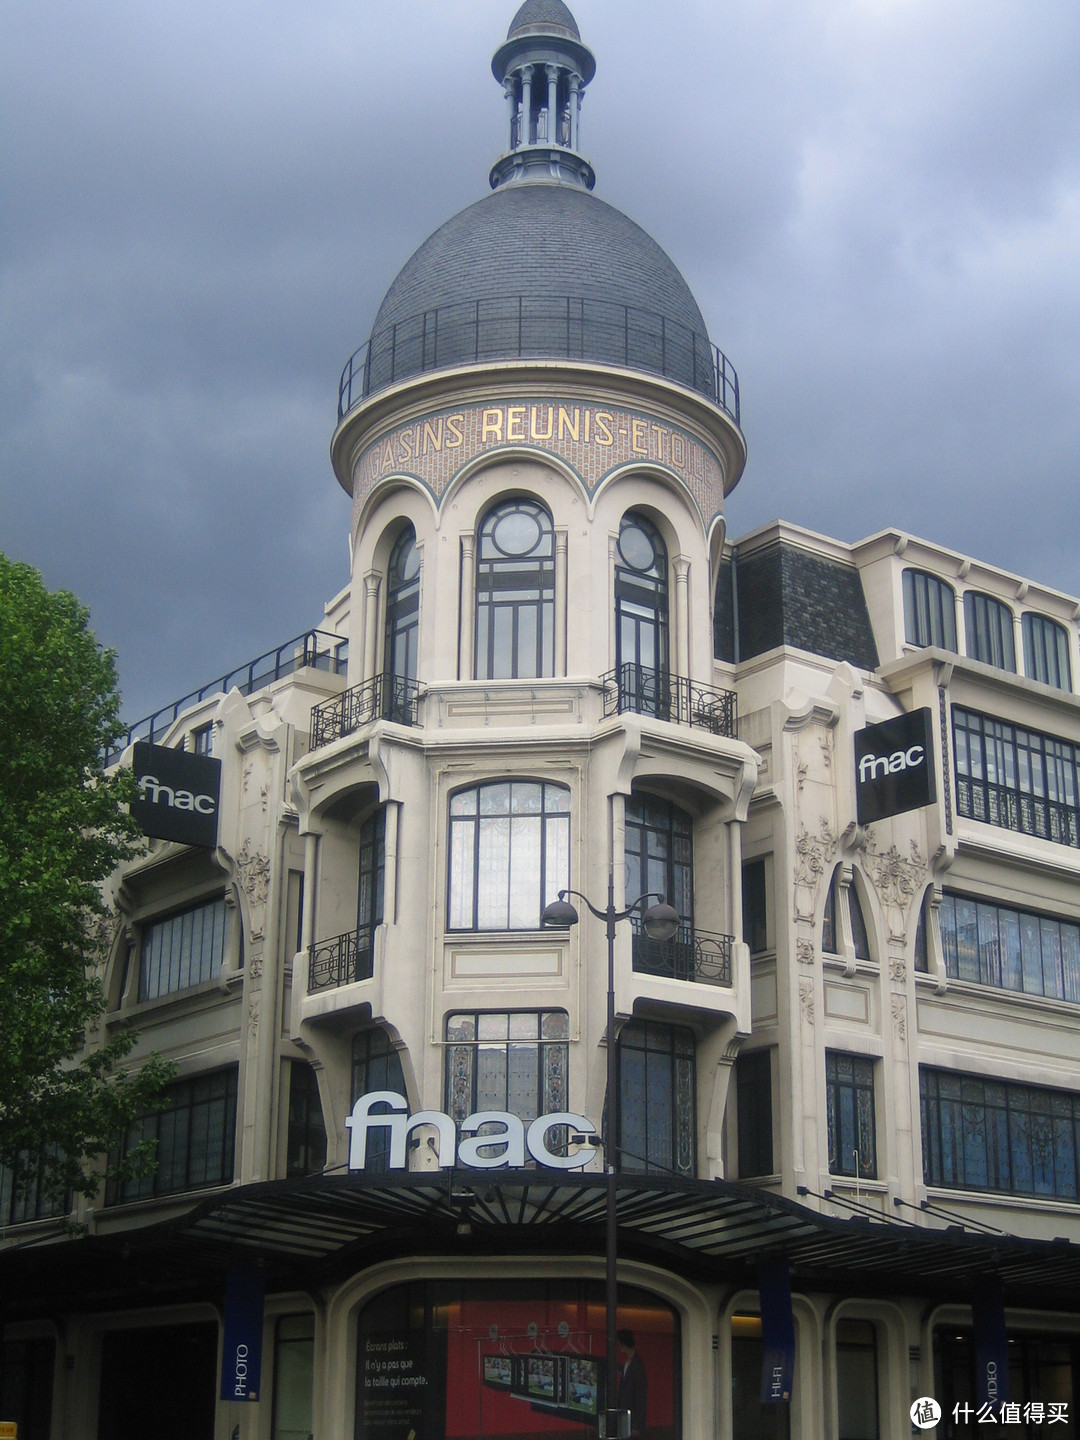 #最值会员# 法国的“新华书店”——FNAC介绍及会员制度详解